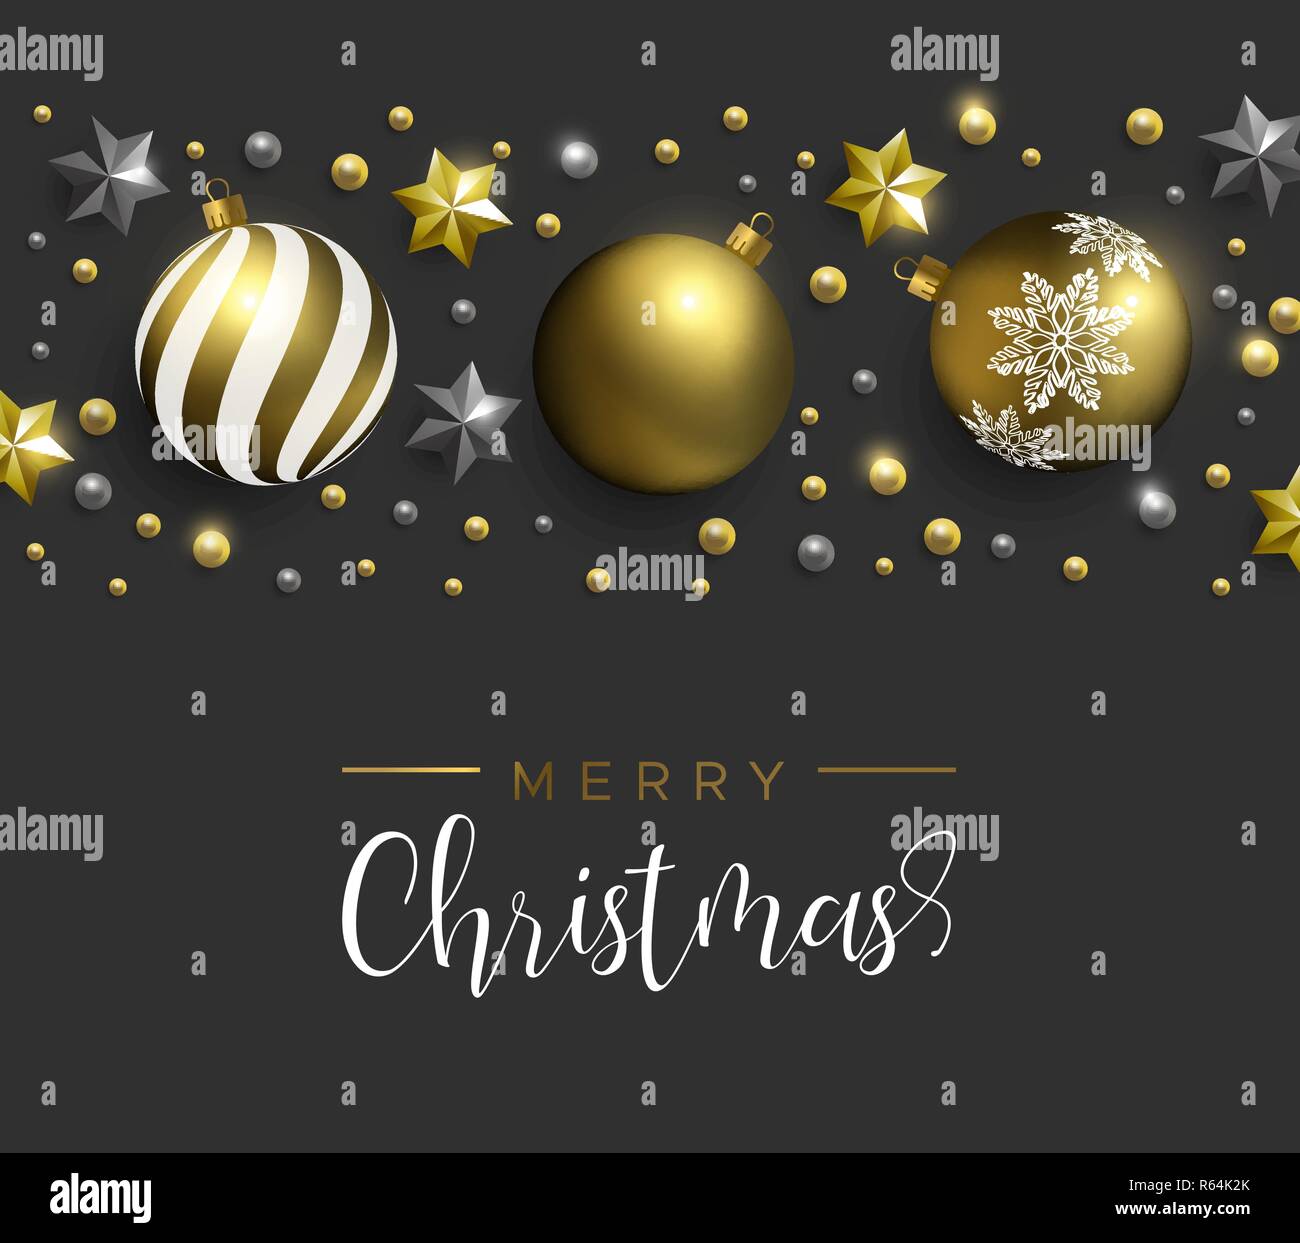 Frohe Weihnachten Karte. Gold realistische Christbaumkugel Ornamente und Sterne auf dem schwarzen Hintergrund. Luxus Urlaub Layout für eine Einladung oder Jahreszeiten Gruß. Stock Vektor